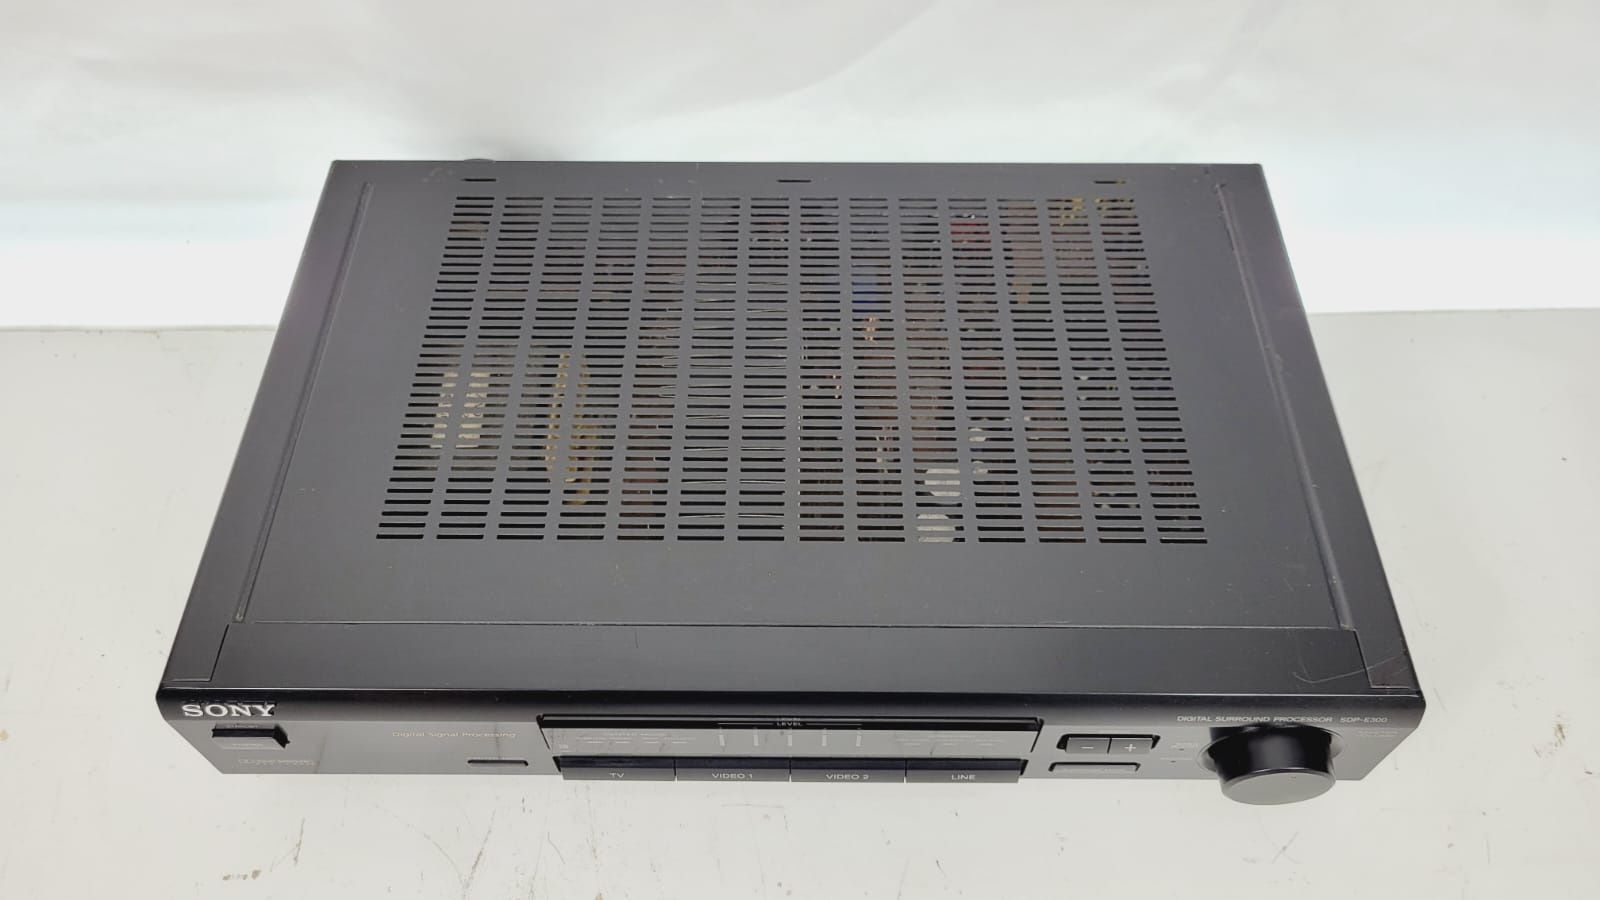 Sony SDP E300 Wzmacniacz rozszerzenie do kina dsp 3 kanały surround